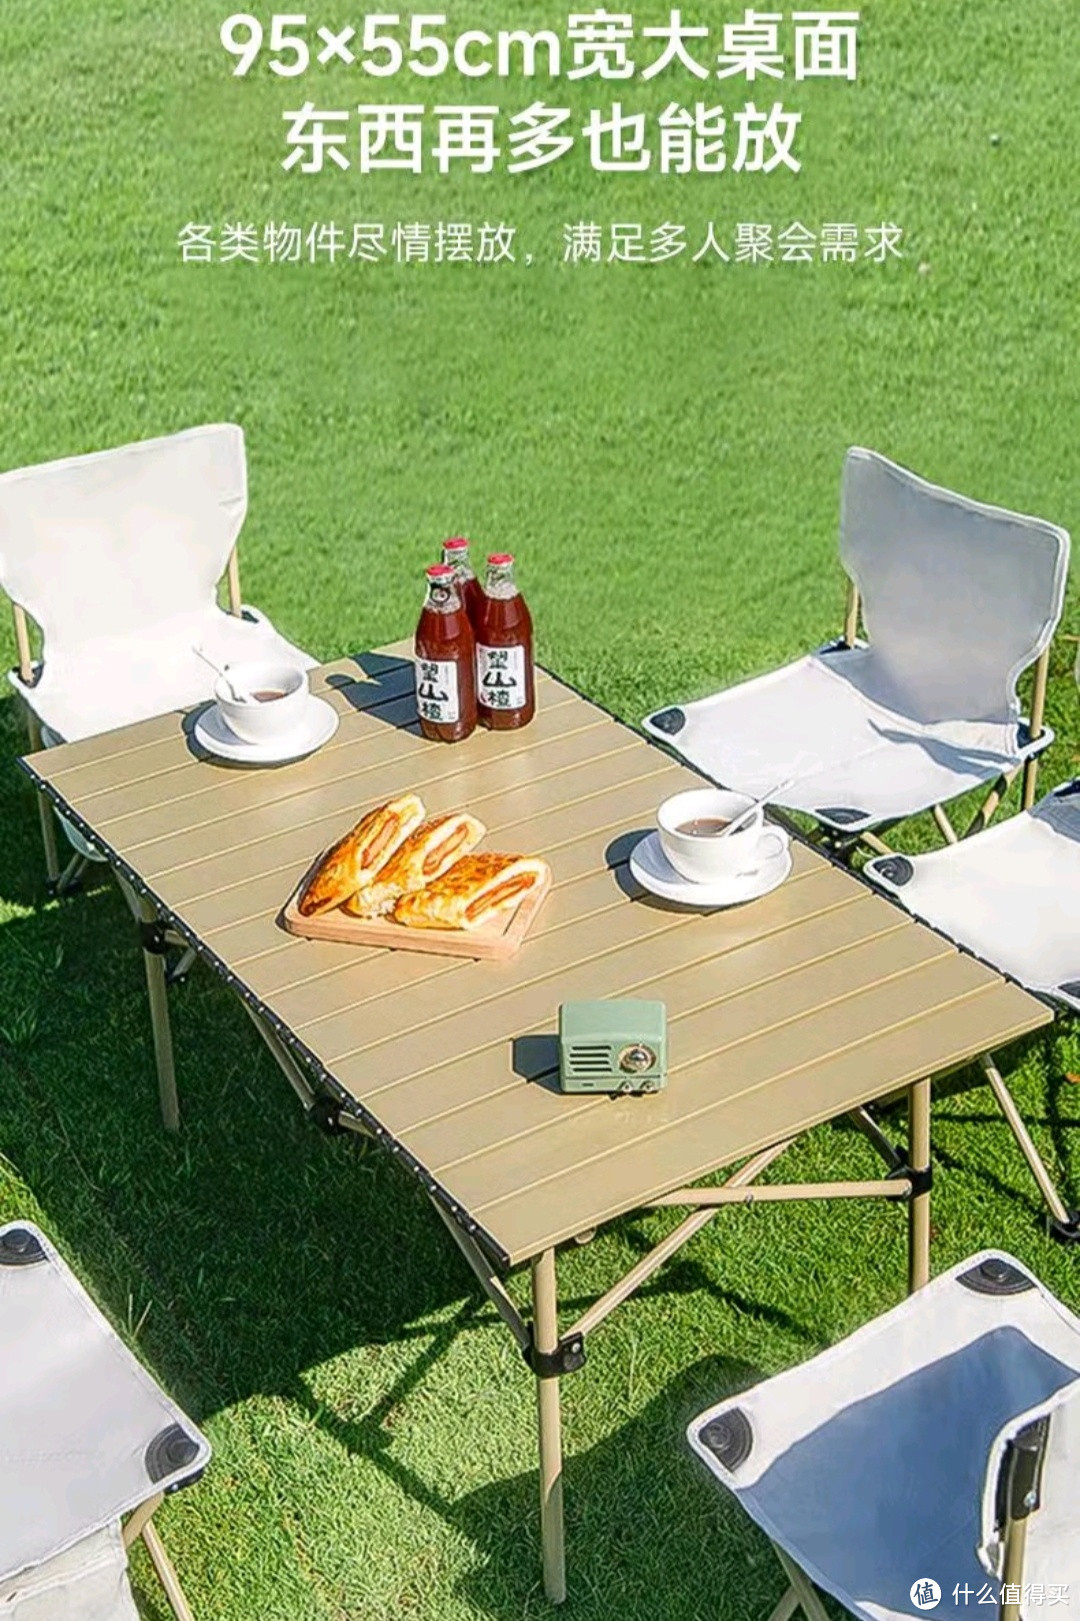 轻松搭建！这款便携式野餐桌让露营更轻松